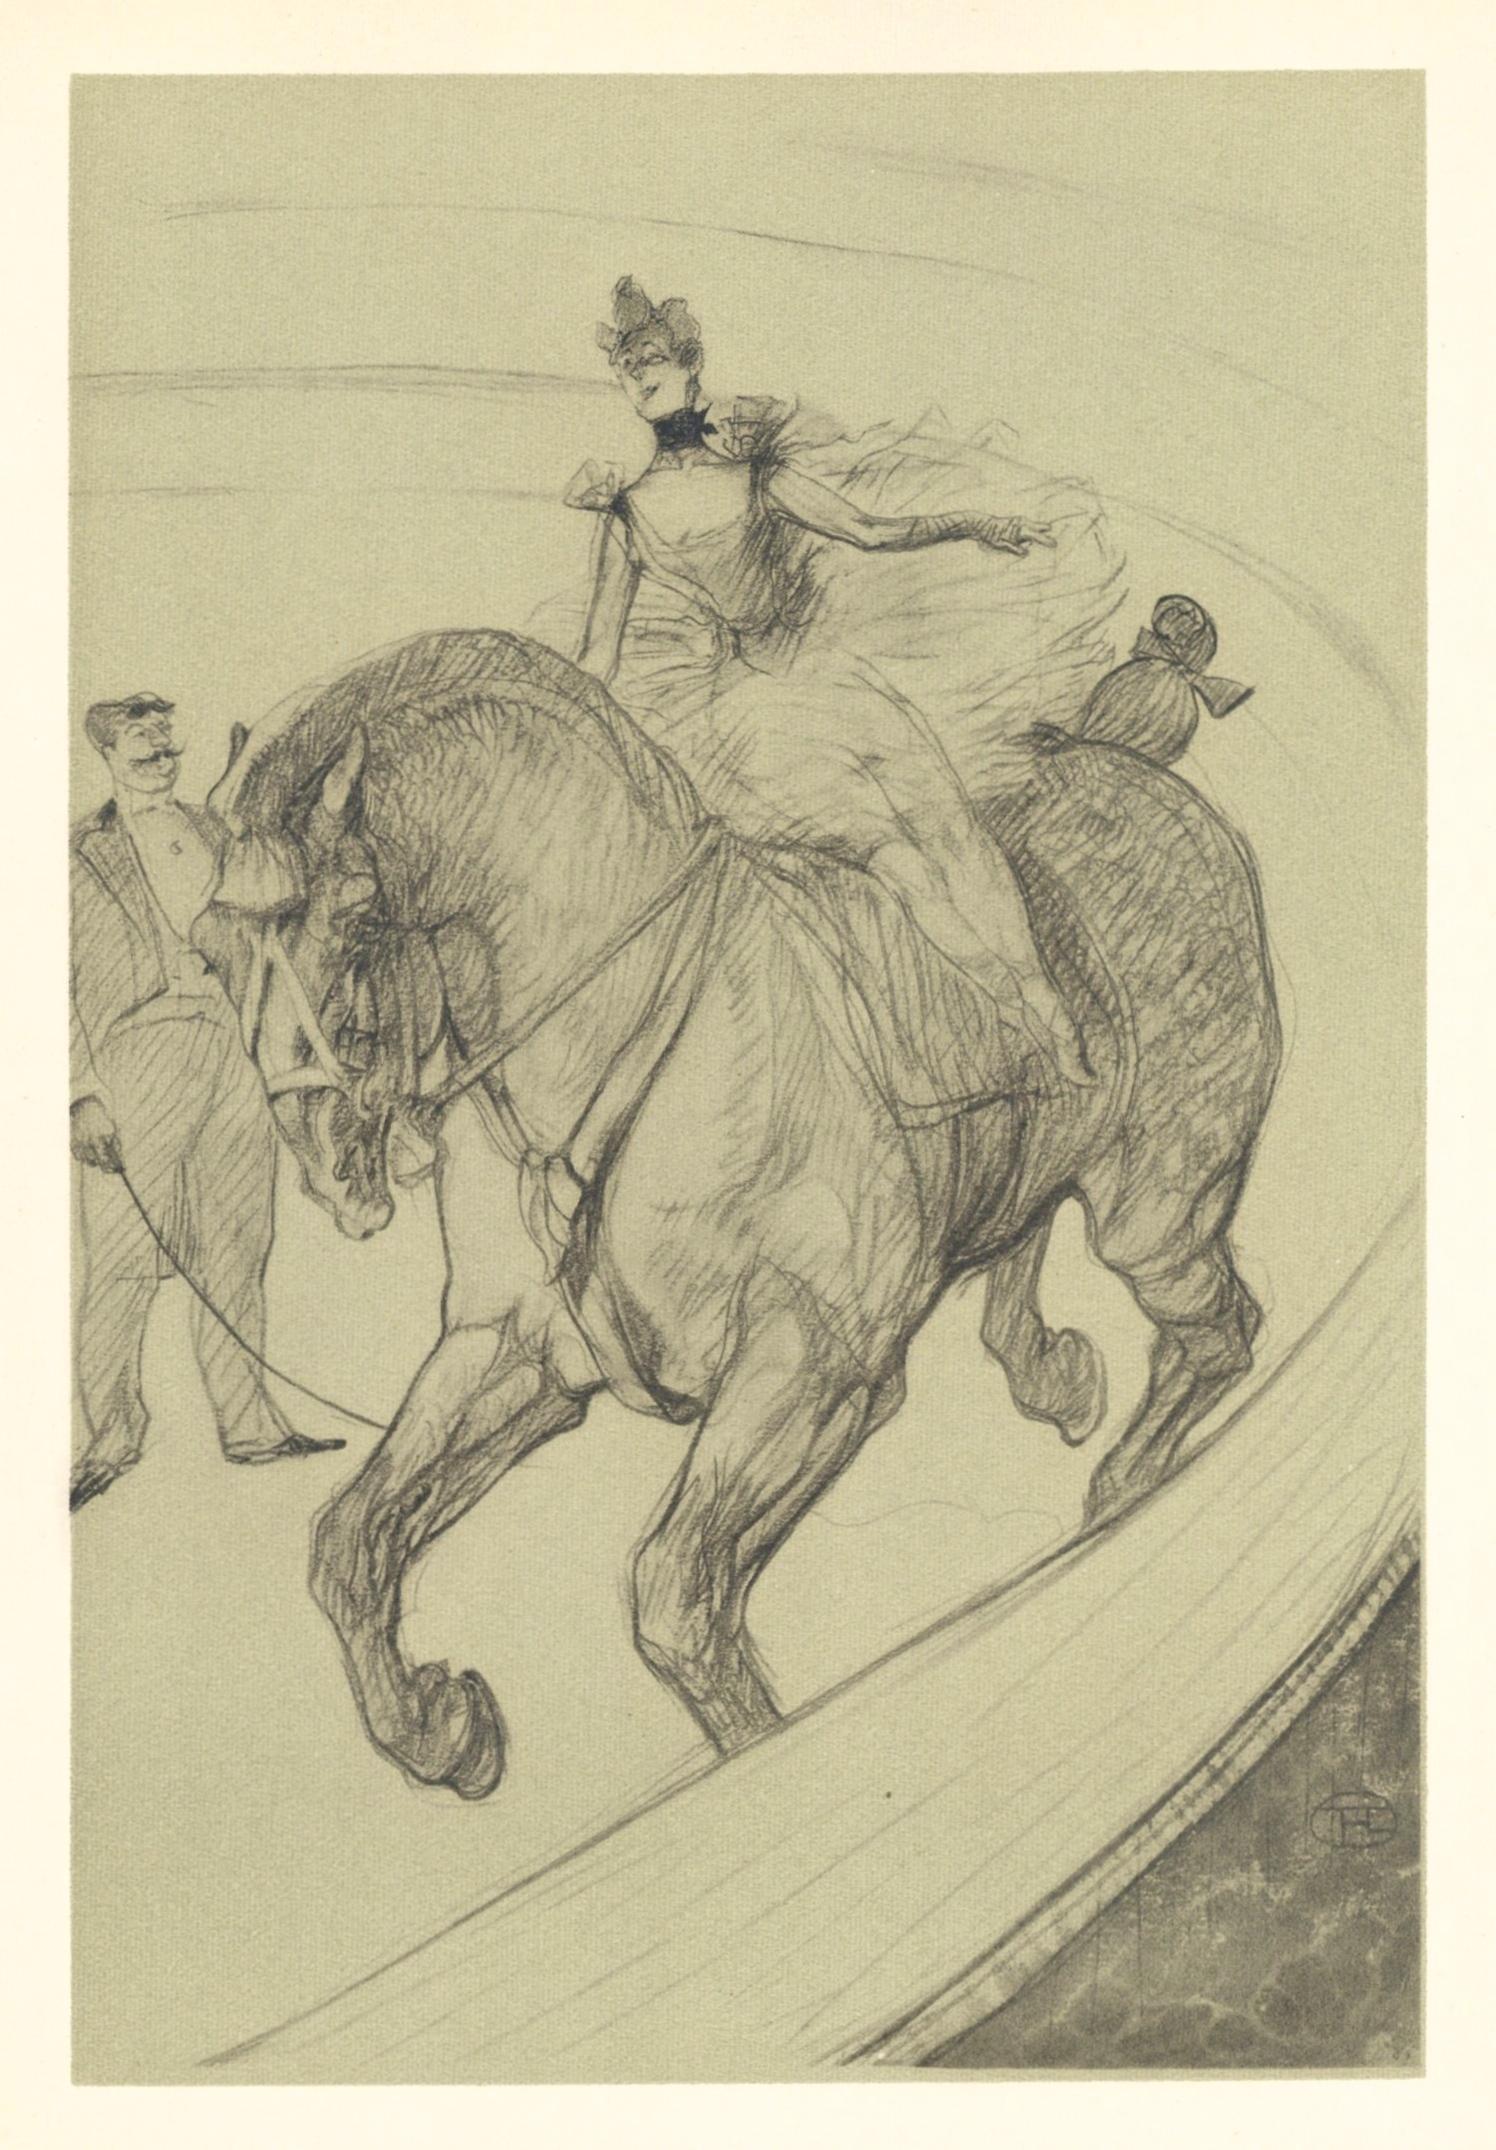 "Travail sans selle" lithograph - Print by (After) Henri Toulouse Lautrec